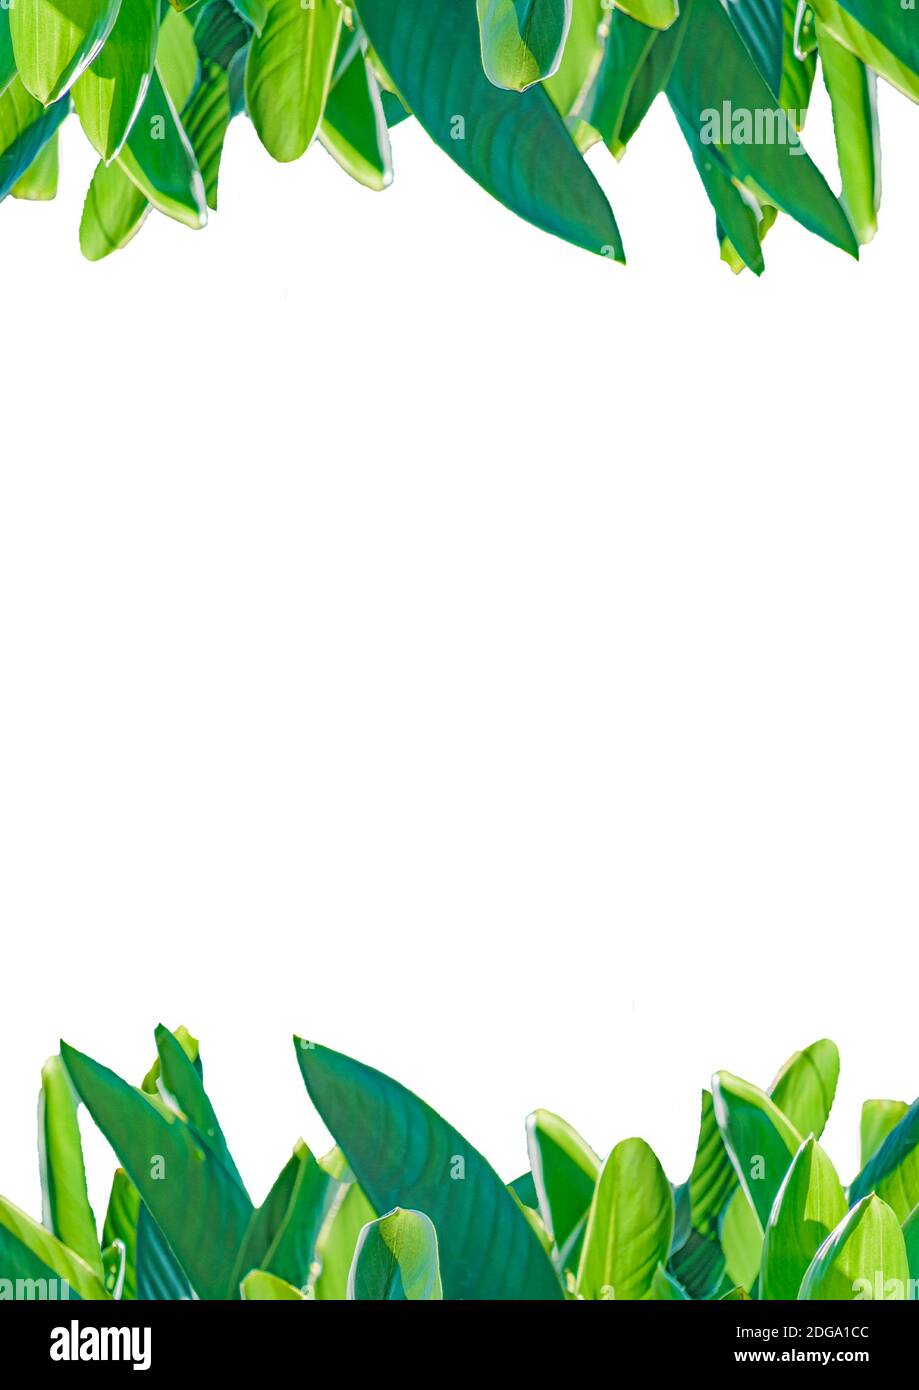 Marco blanco con bordes de hojas Fotografía de stock - Alamy